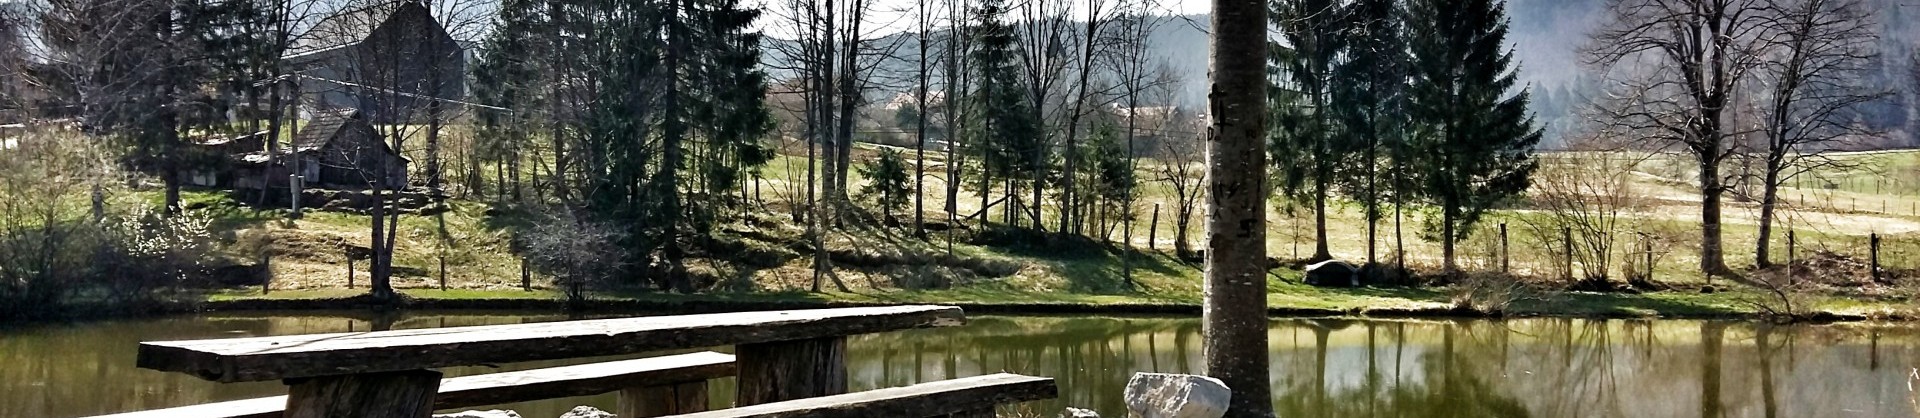 Crnopotoski ribnik in klopce sl